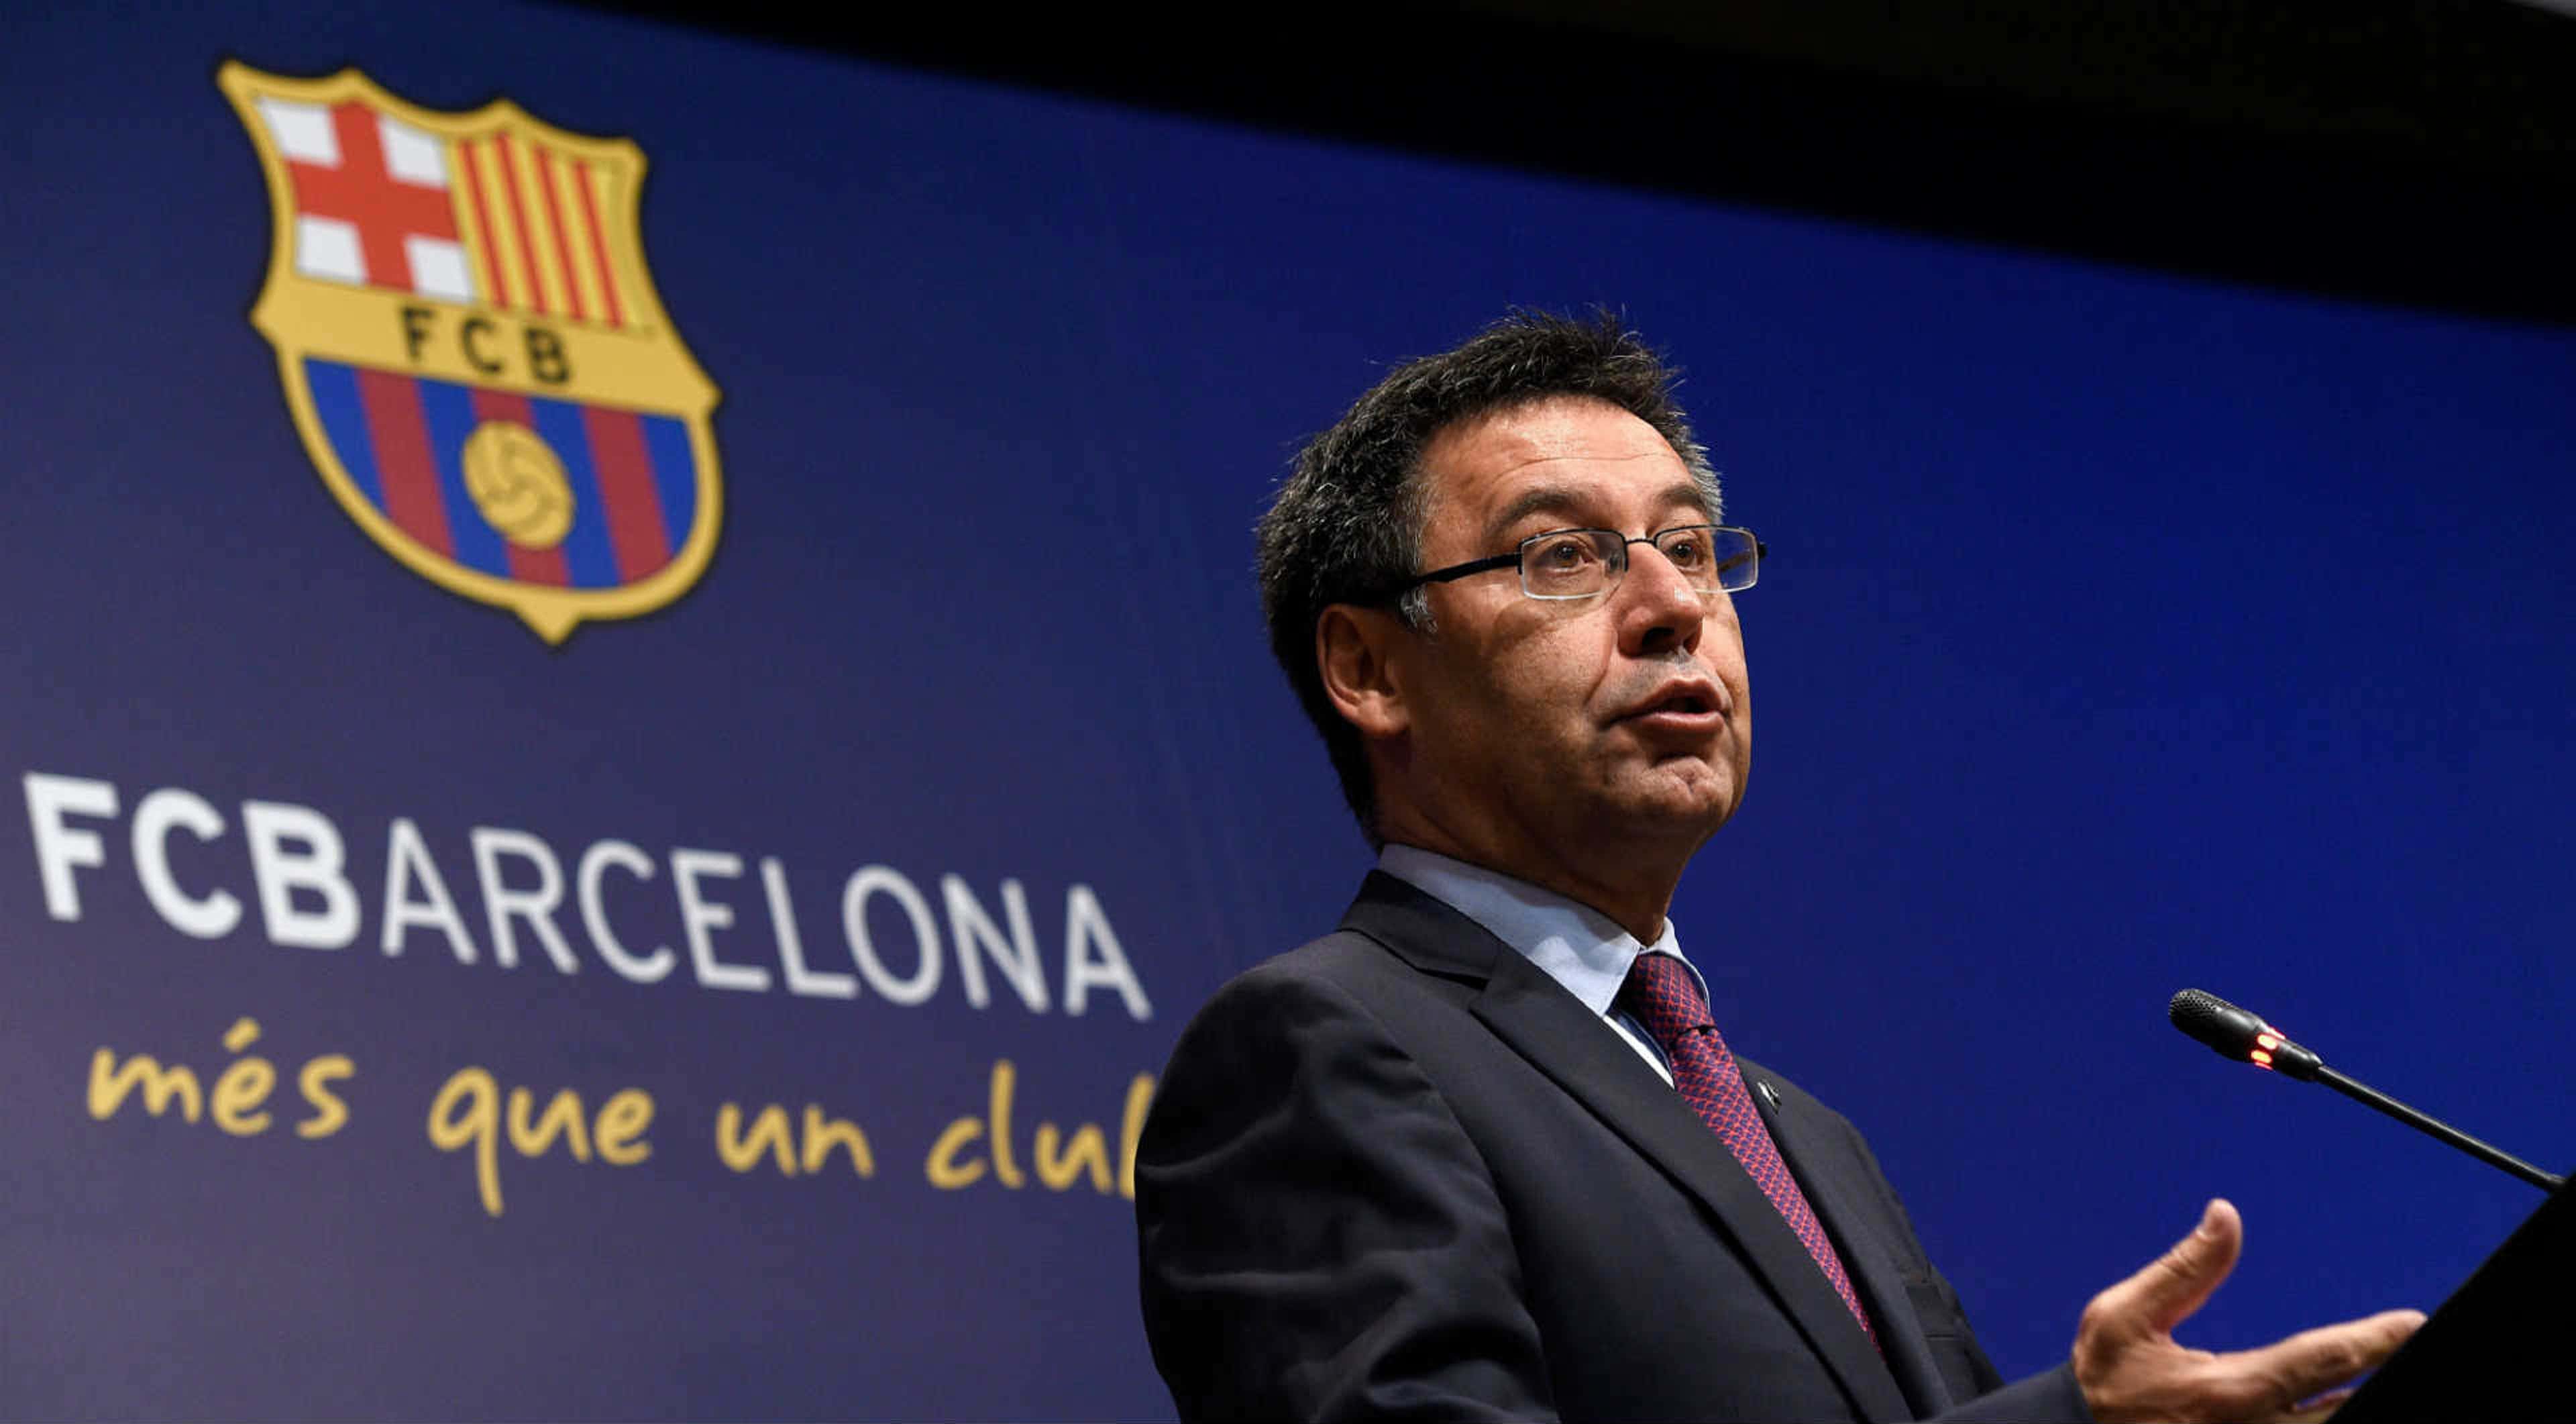 Barcelona está acima do melhor jogador do mundo', diz presidente do clube